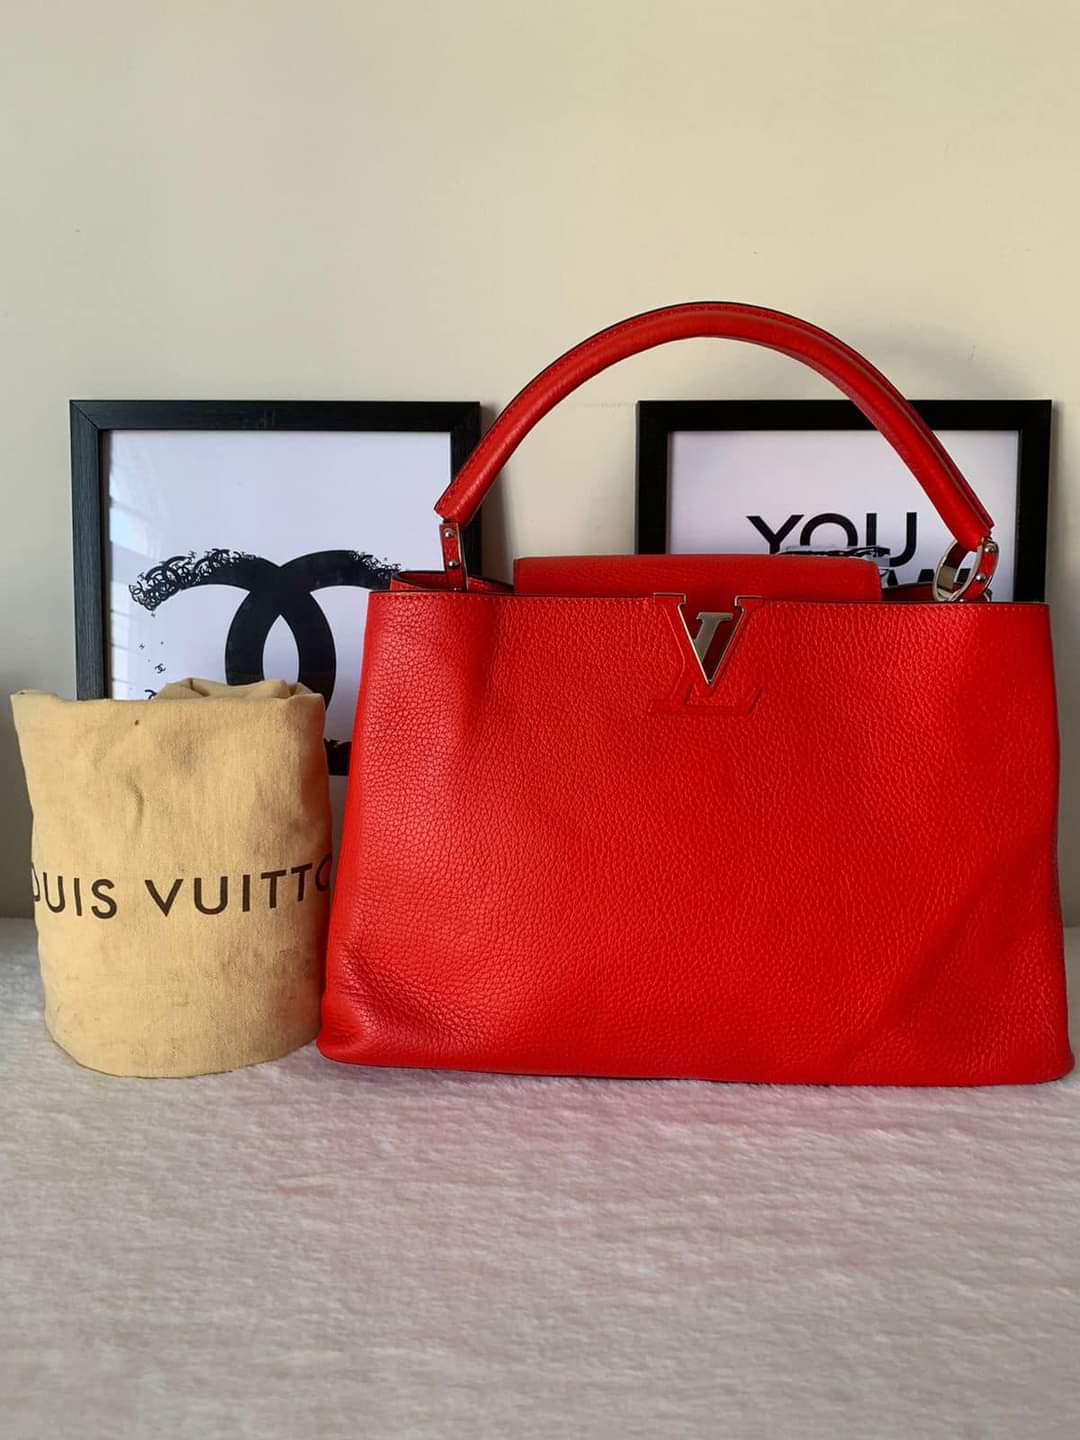 Louis Vuitton Dauphine Shoulder Bag Limited Edition Since 1854 Monogram  Jacquard Mini - ShopStyle